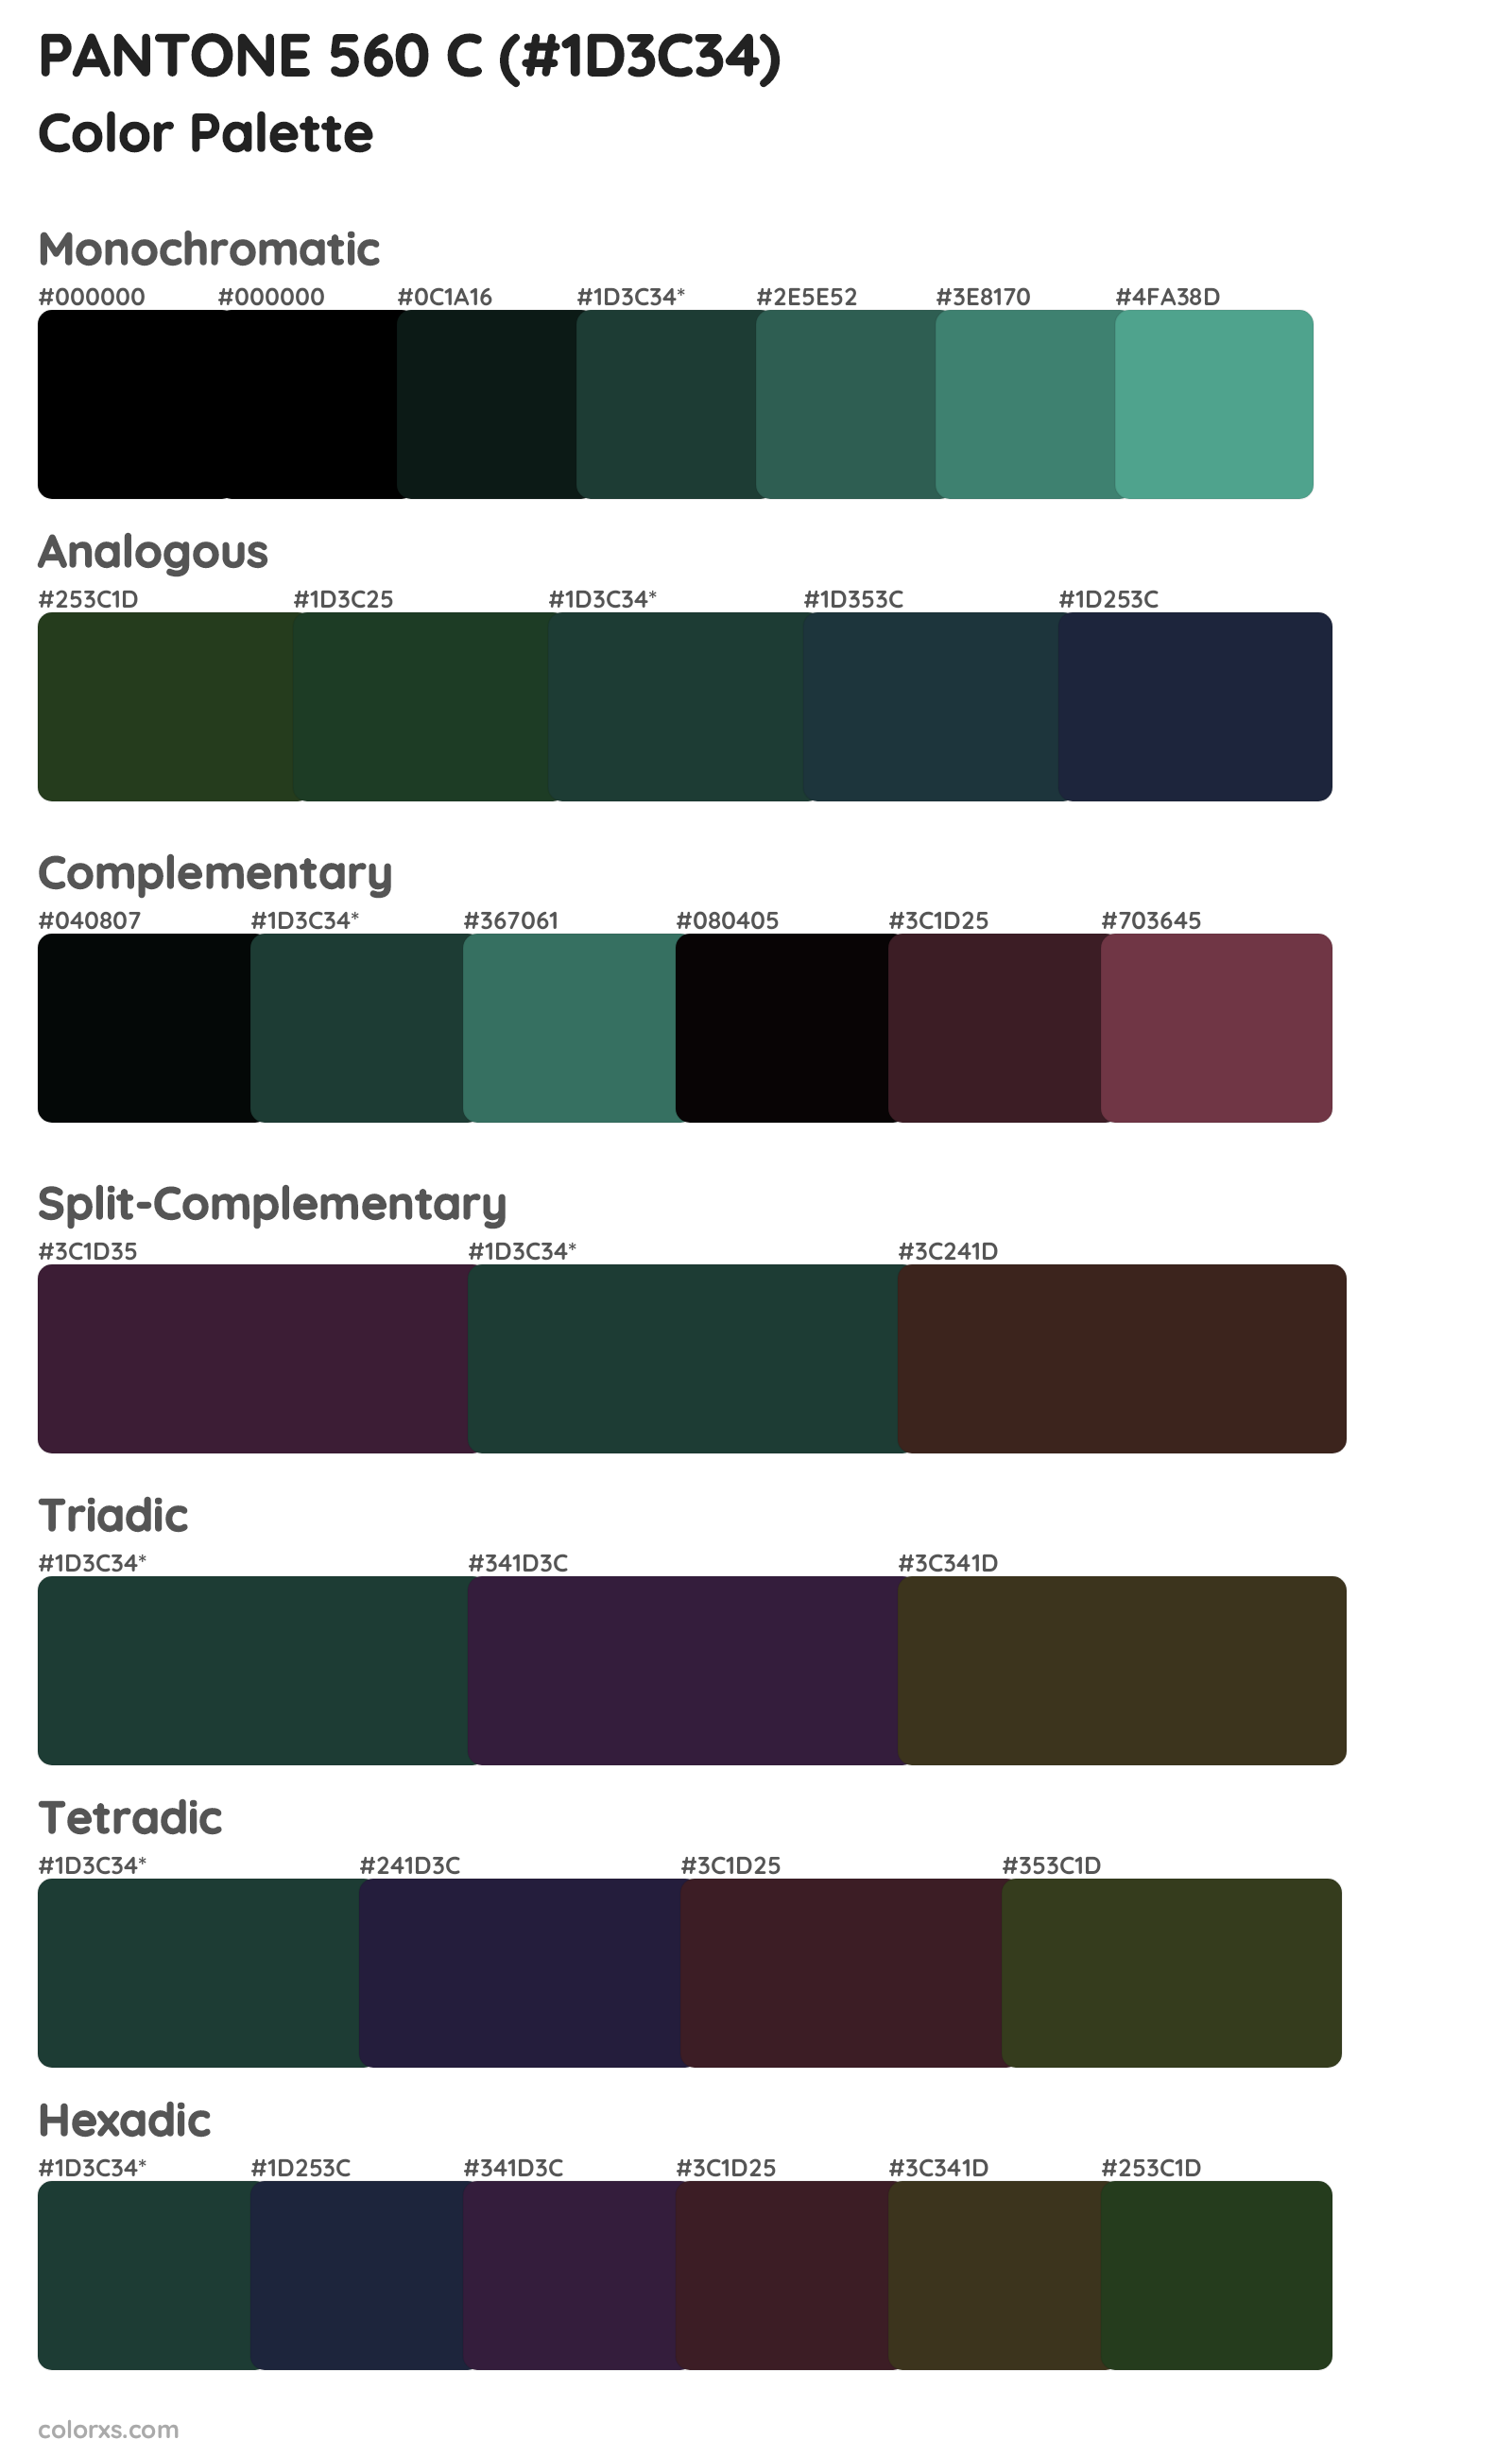 PANTONE 560 C Color Scheme Palettes